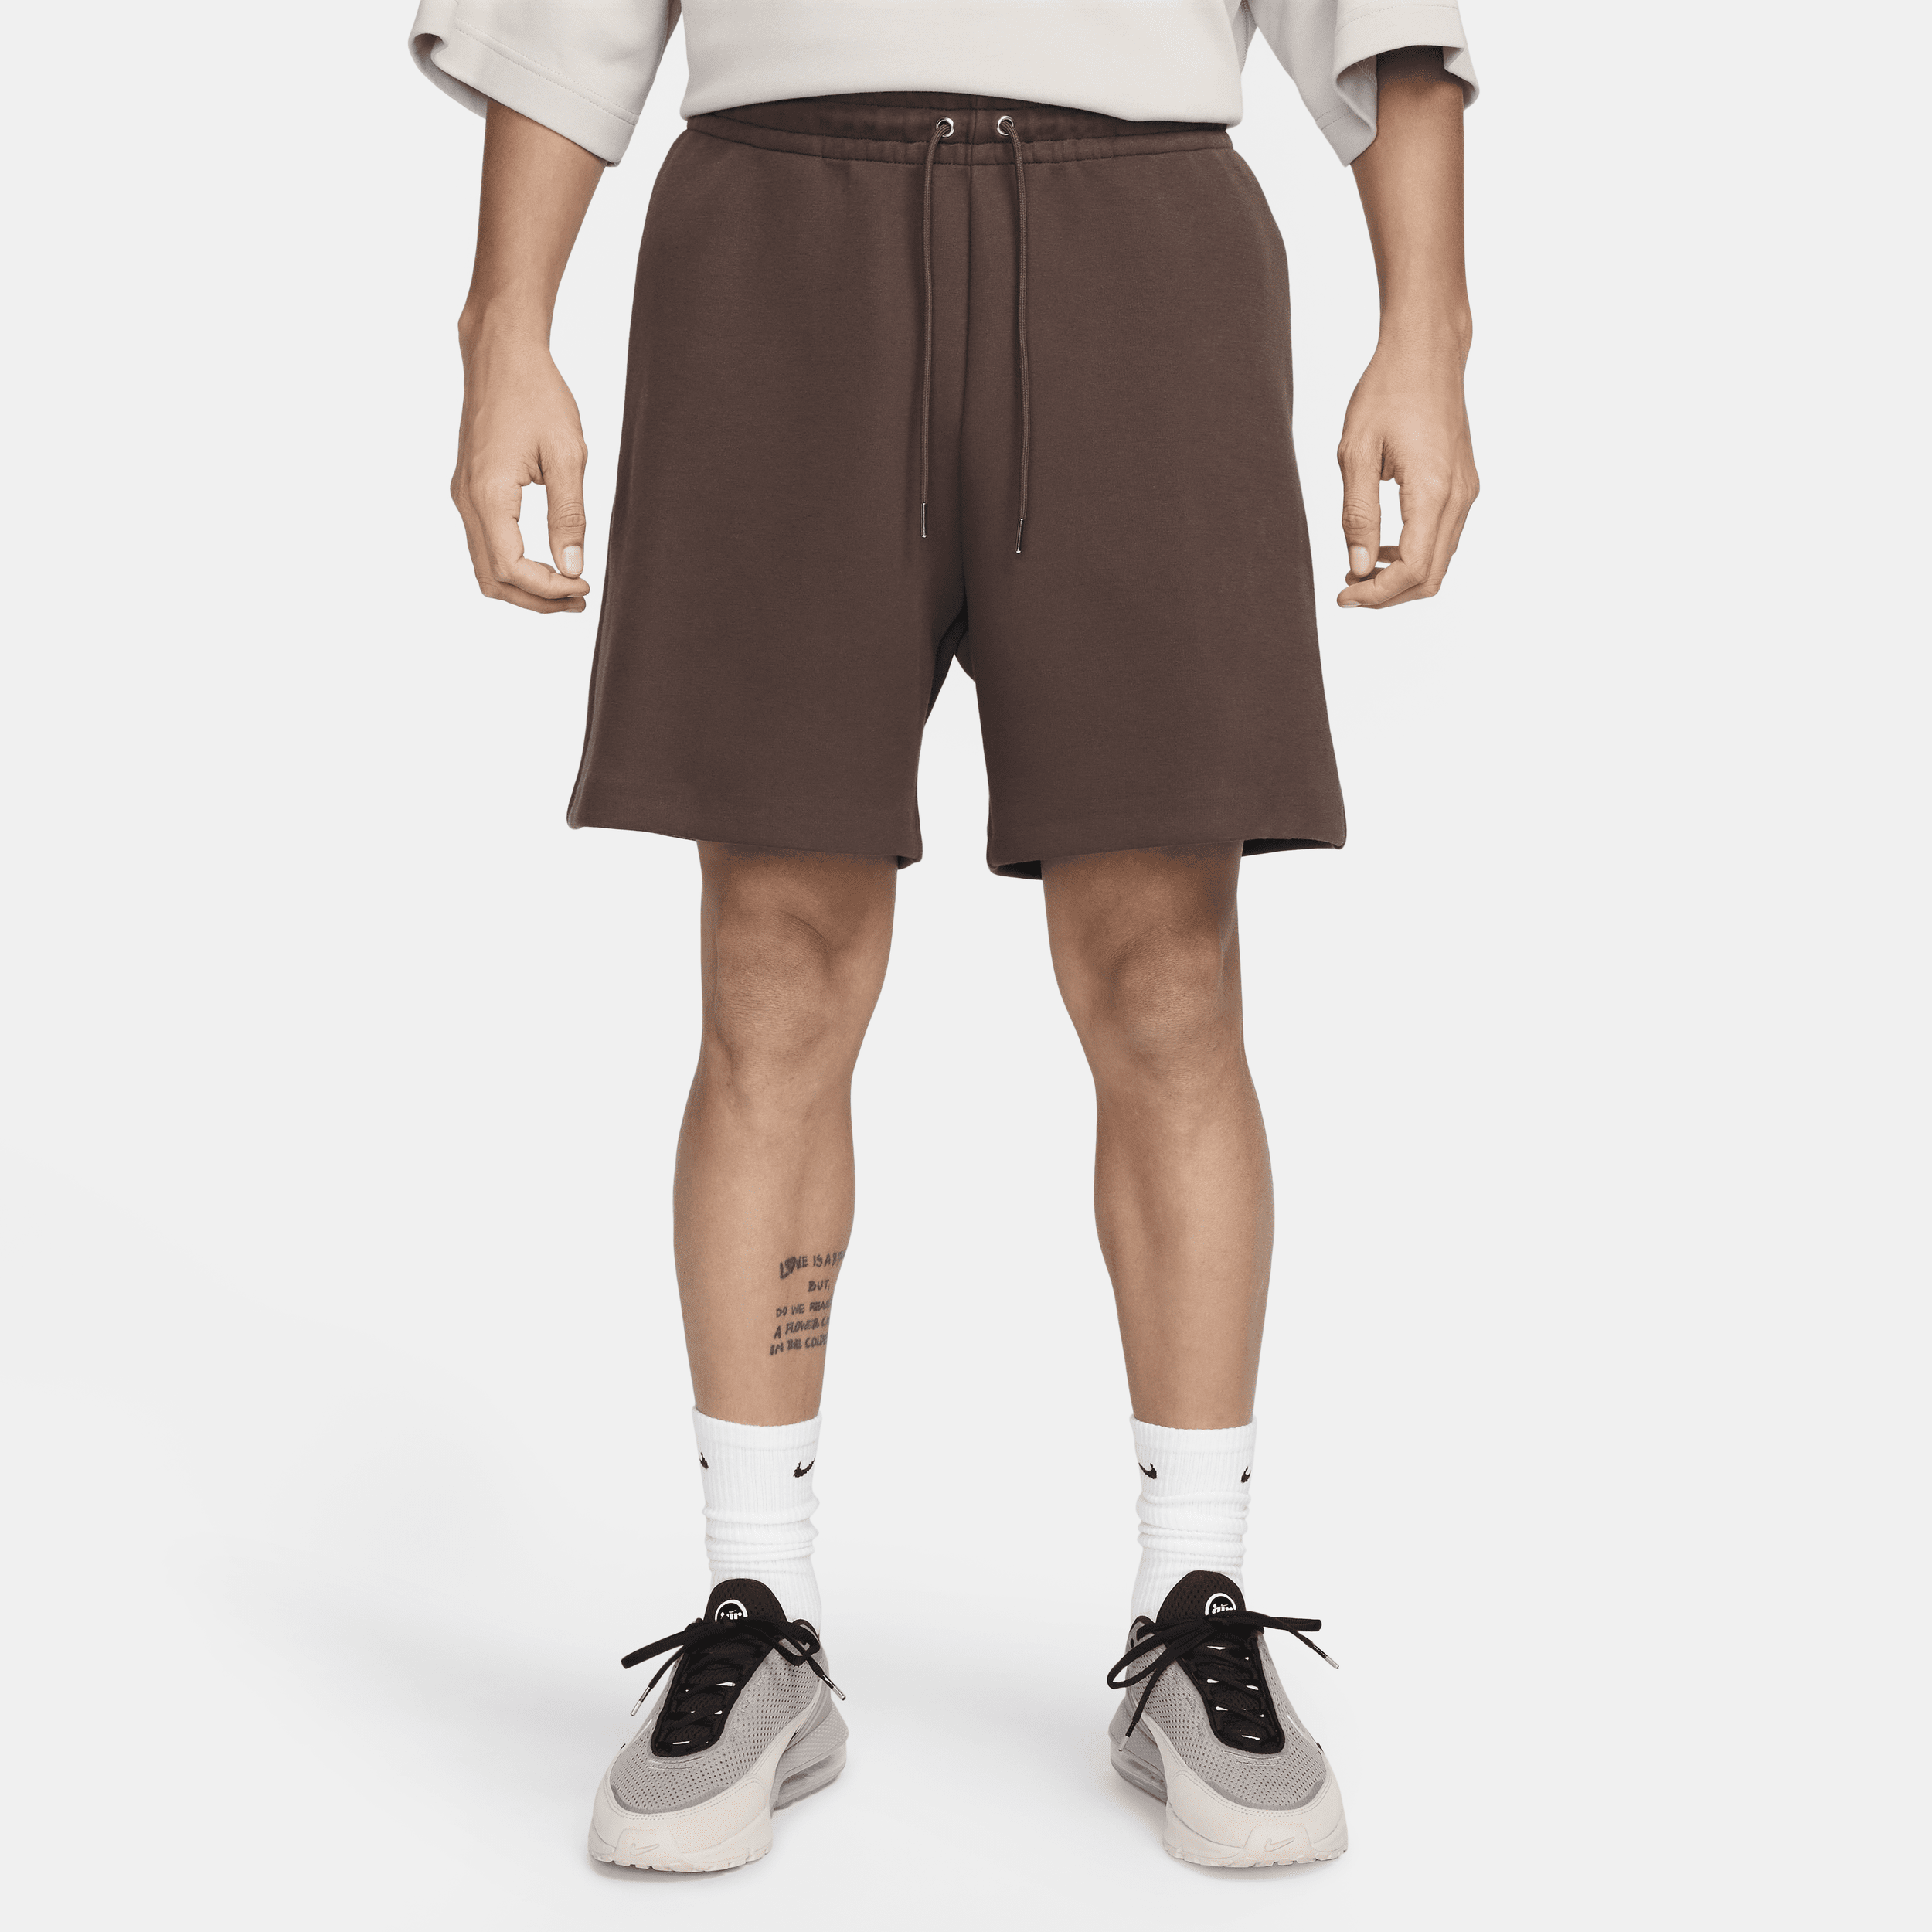 Shorts in fleece Nike Sportswear Tech Fleece Reimagined – Uomo - Marrone